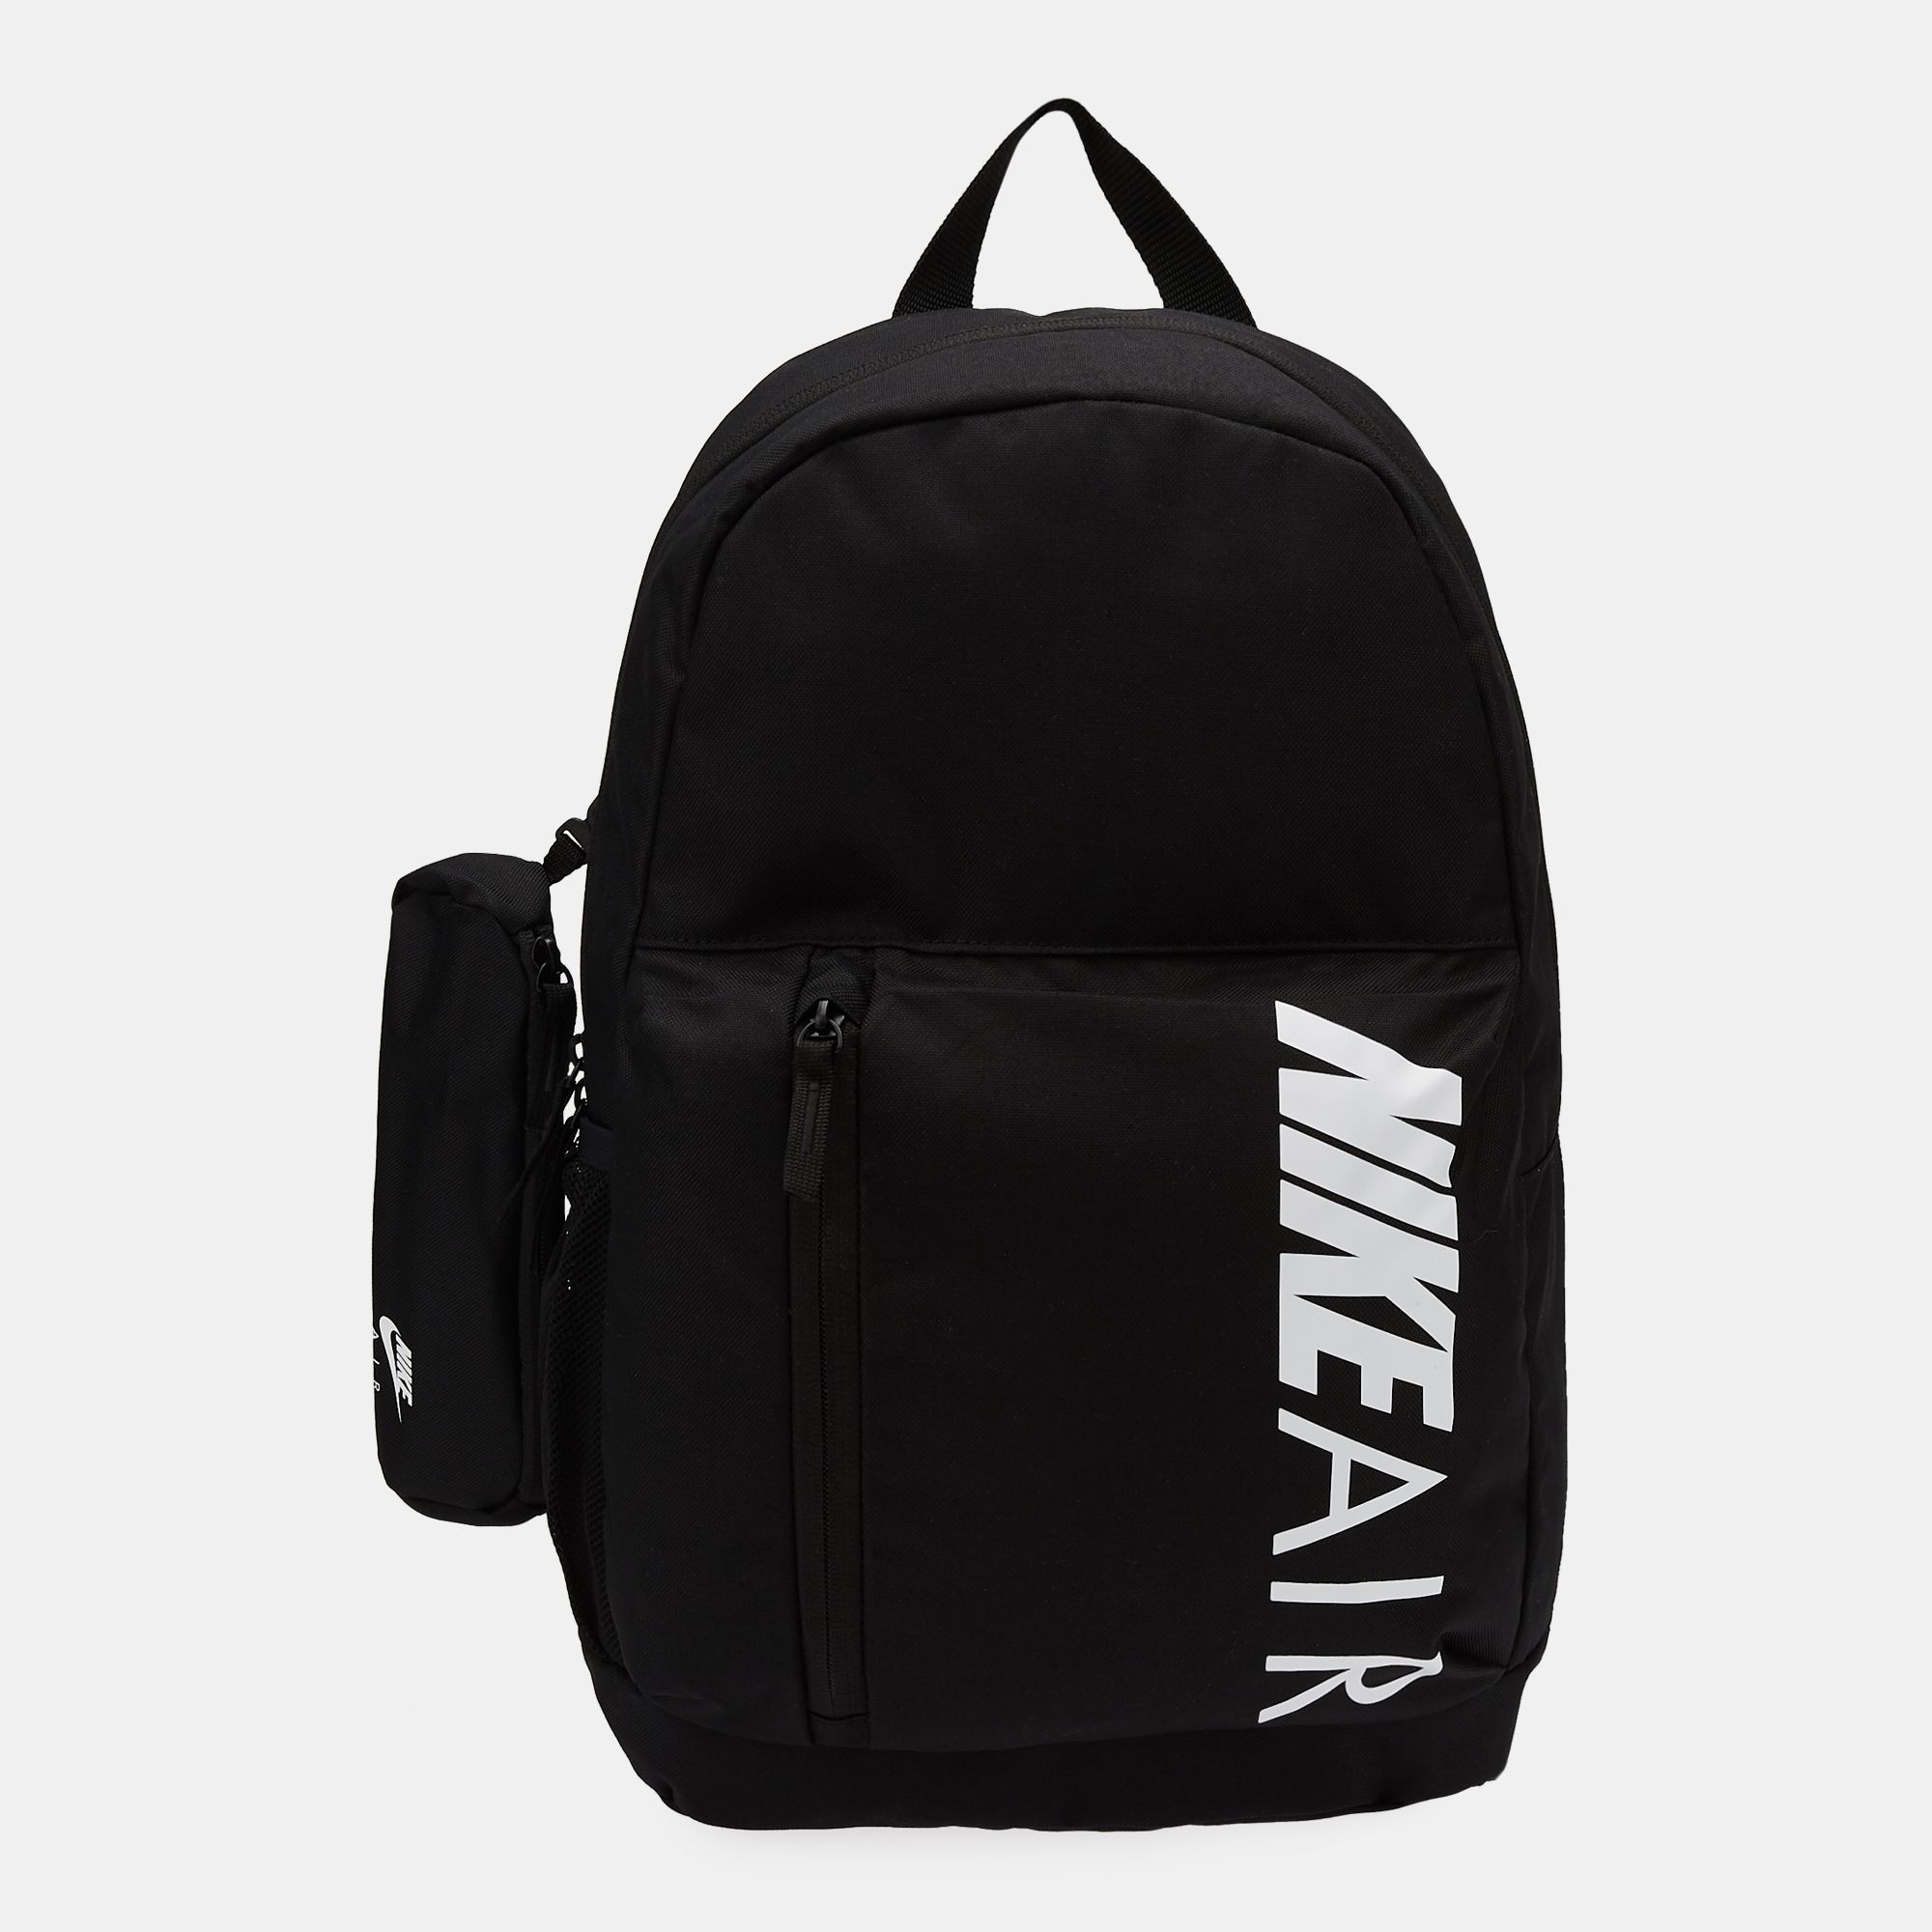 Buy Nike Kids' Air Elemental Backpack (Older Kids) Online in Saudi ...